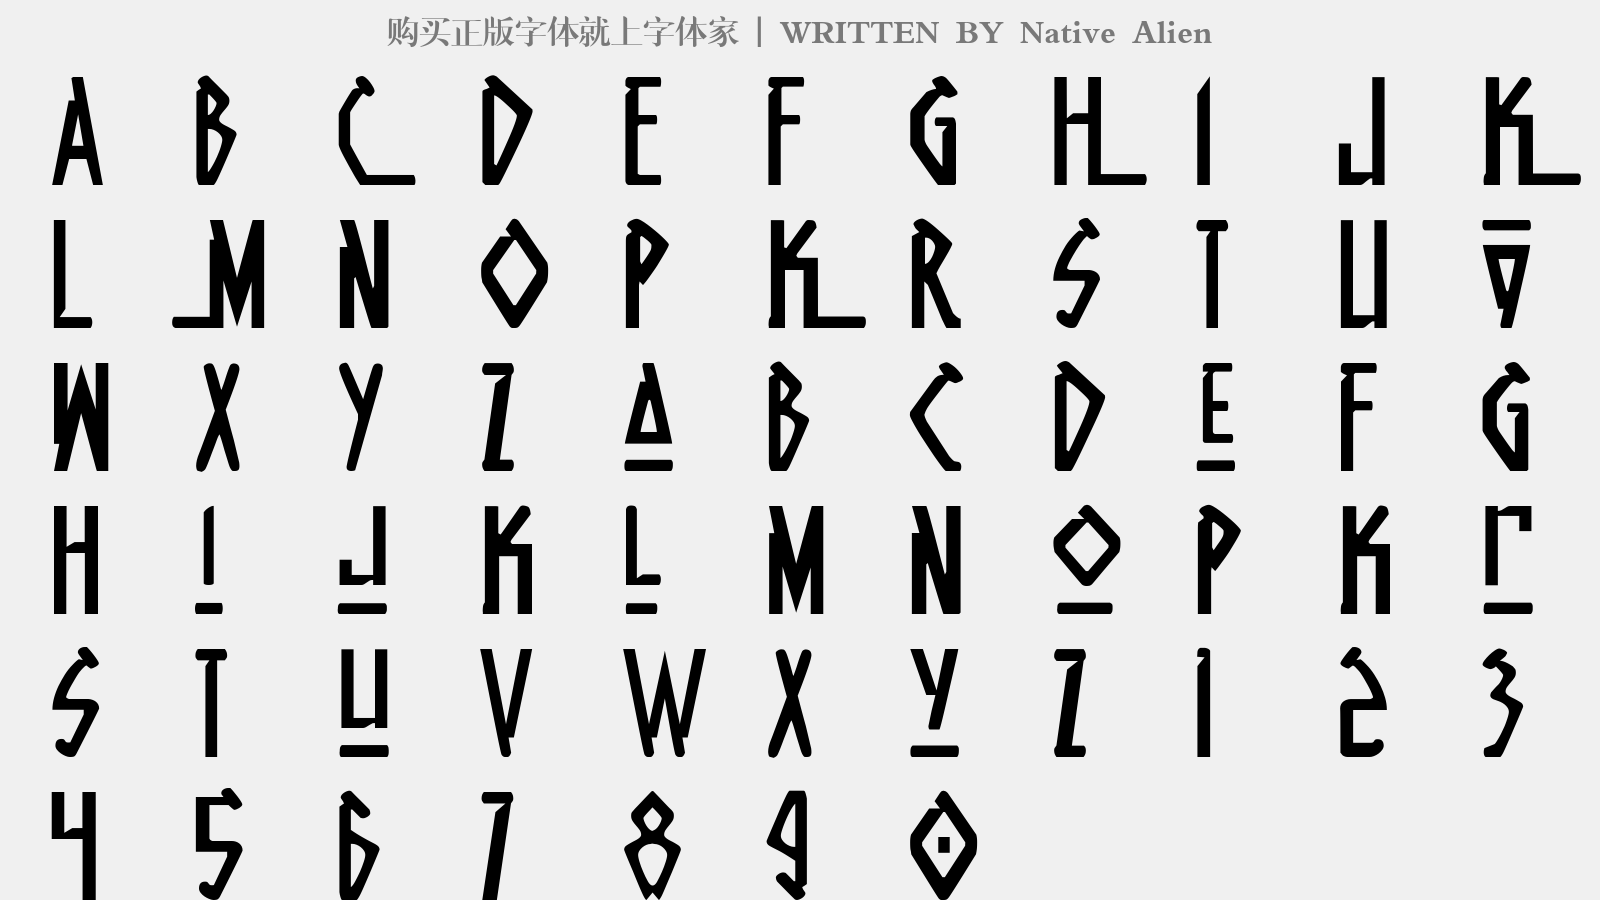 Native Alien - 大写字母/小写字母/数字